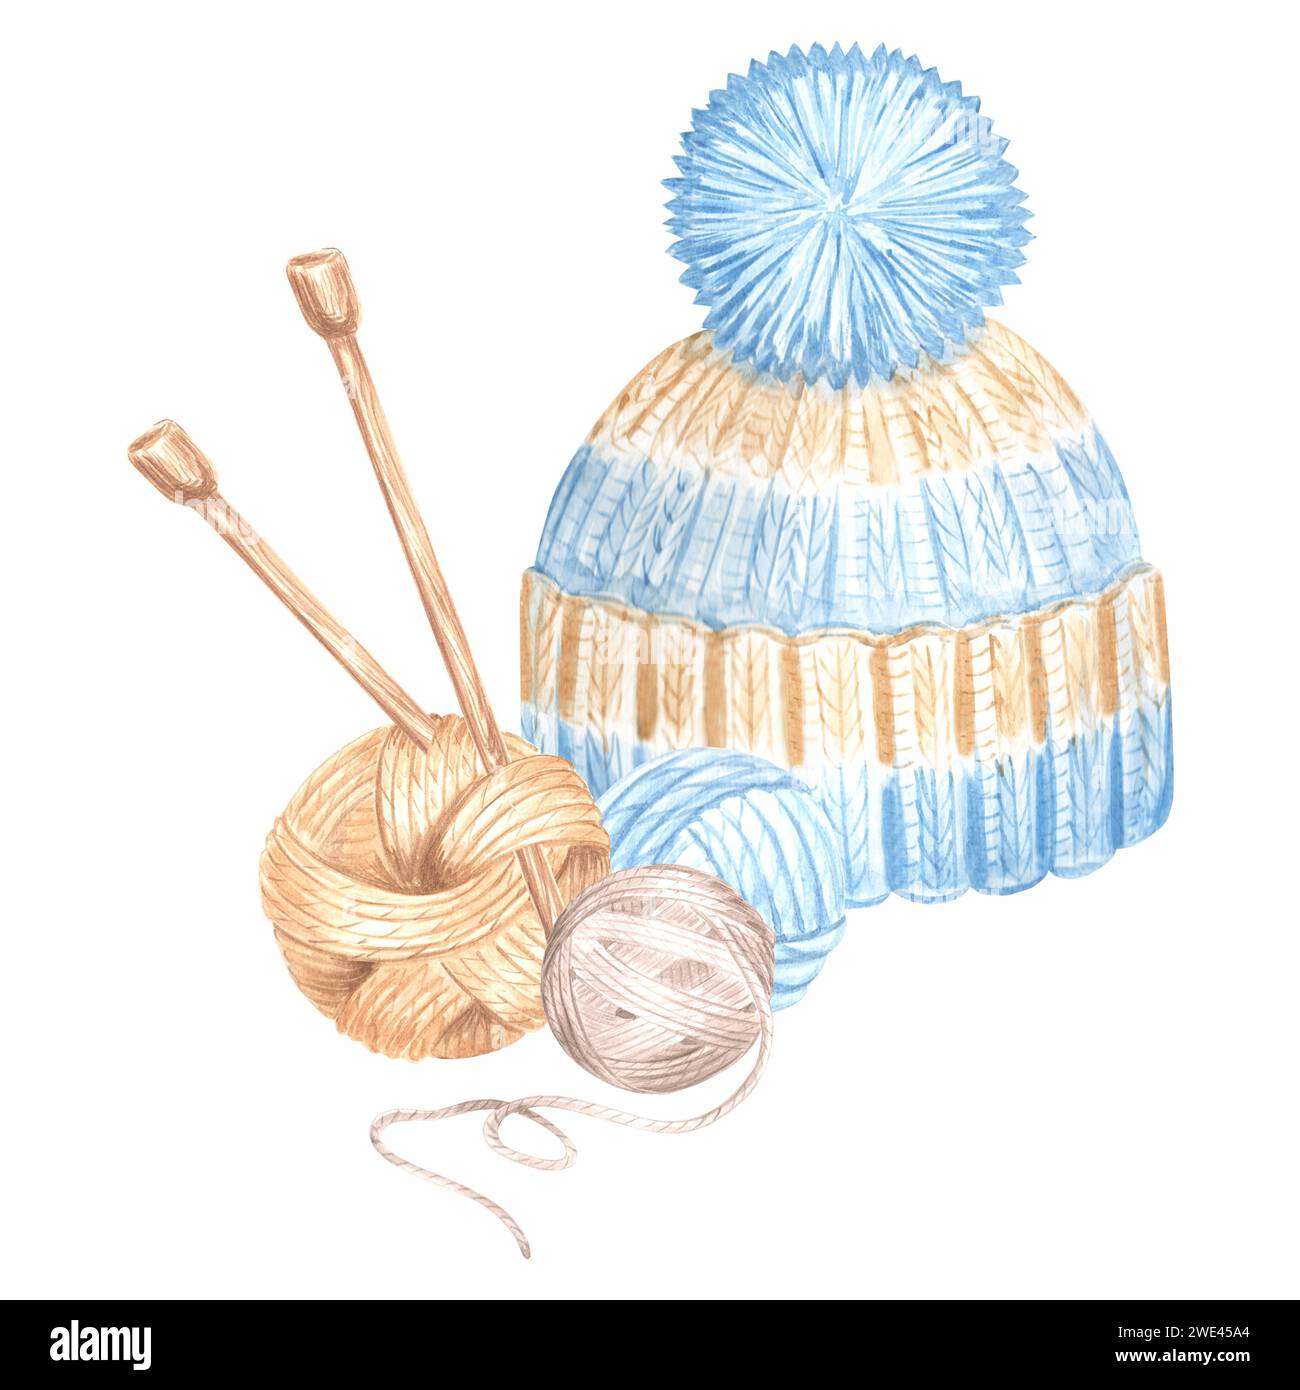 Chapeau tricoté aquarelle avec enchevêtrement de fil et aiguilles à tricoter. Illustration de modèle d'aquarelle pour le passe-temps de tricot de laine. illust isole tire a la main Banque D'Images